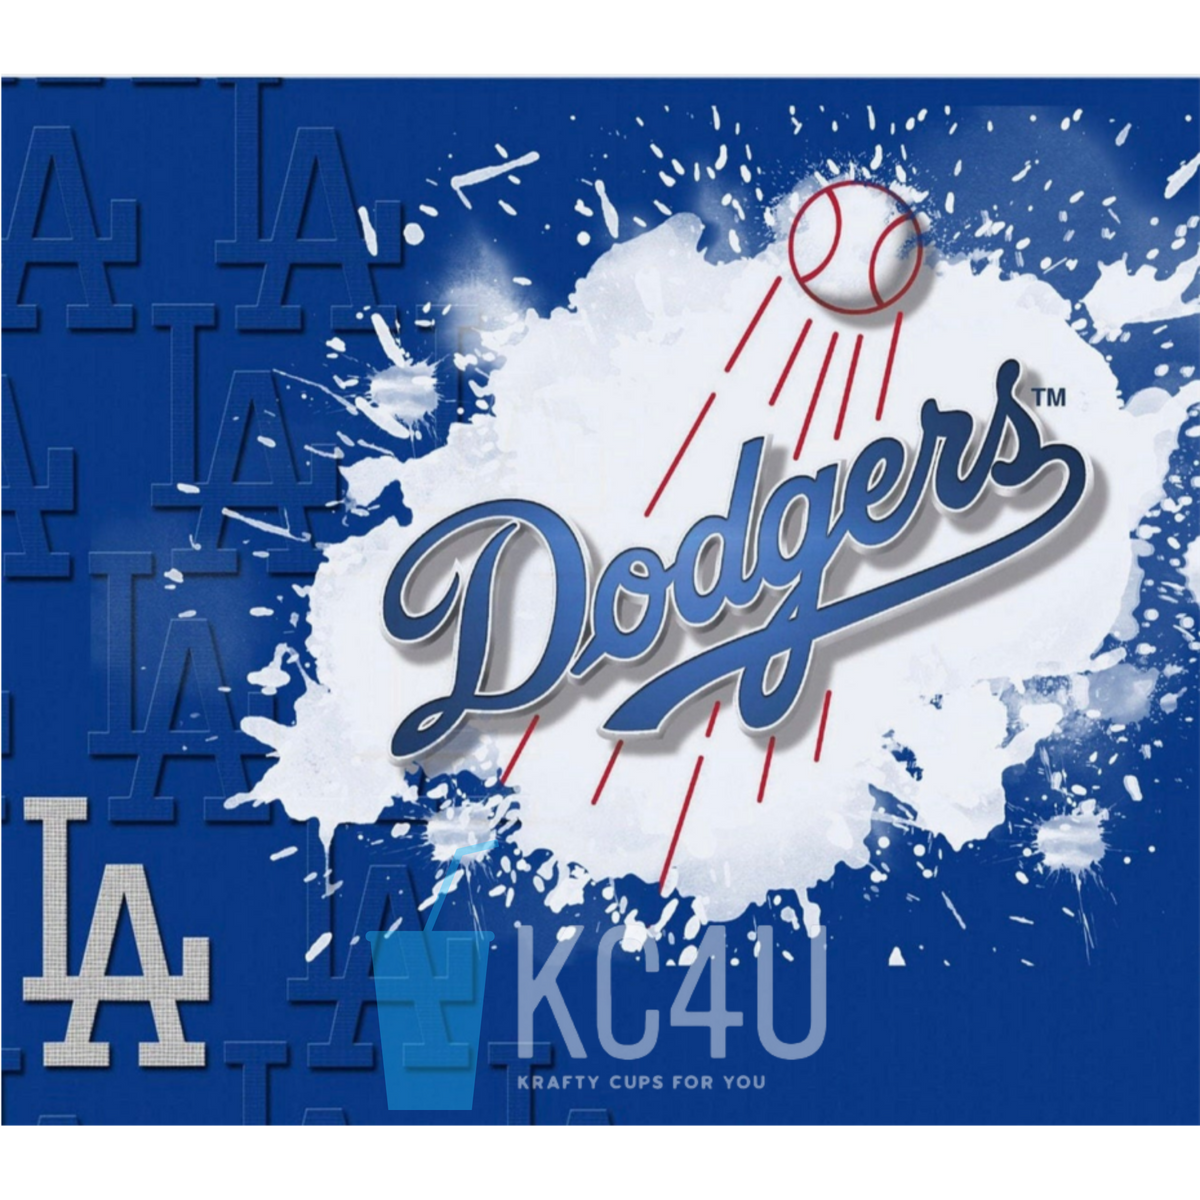 LA Dodgers Mugs